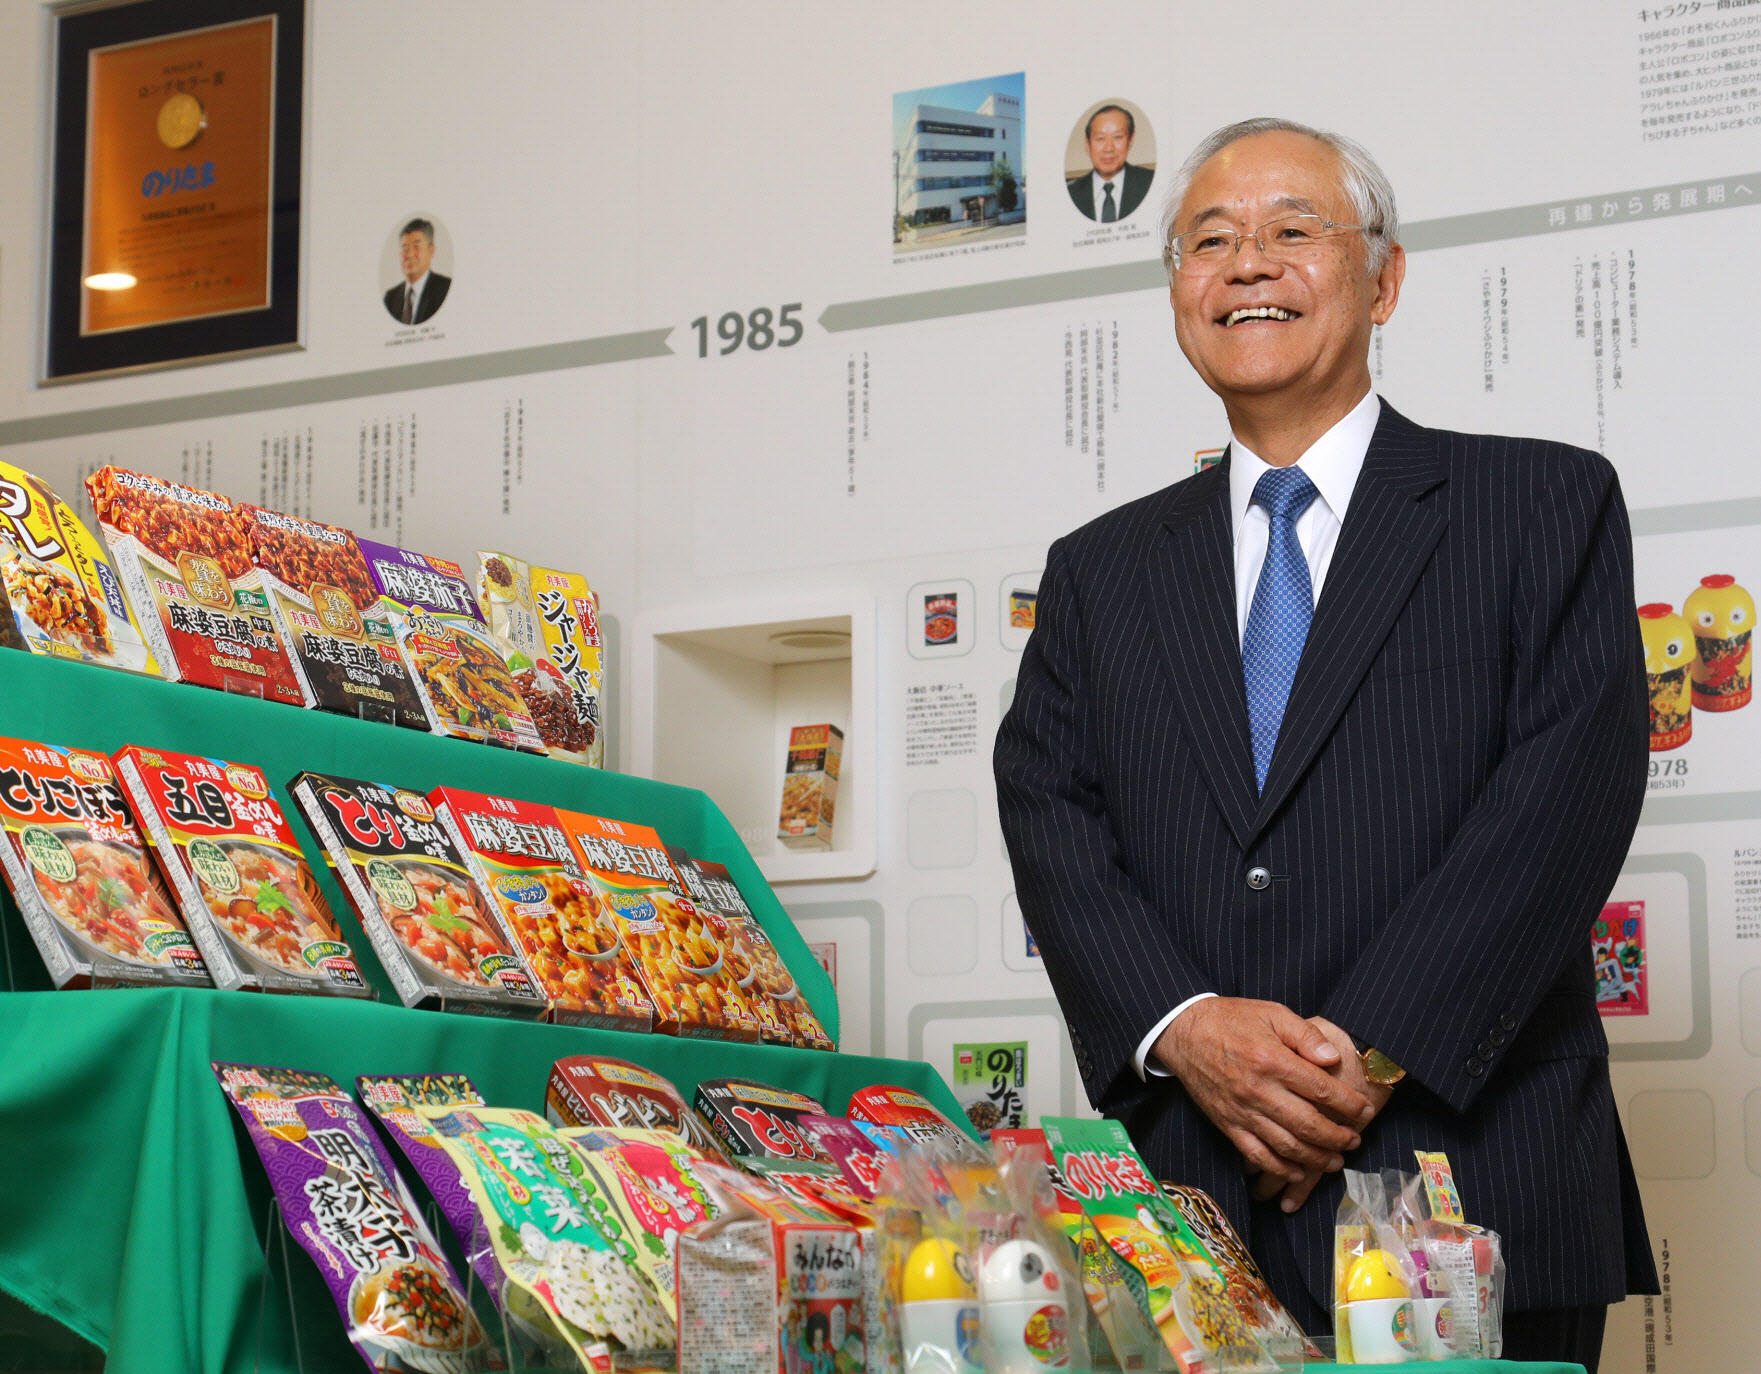 丸美屋食品工業の阿部豊太郎社長は創業者の息子だが、日本長期信用銀行に15年も勤めていた